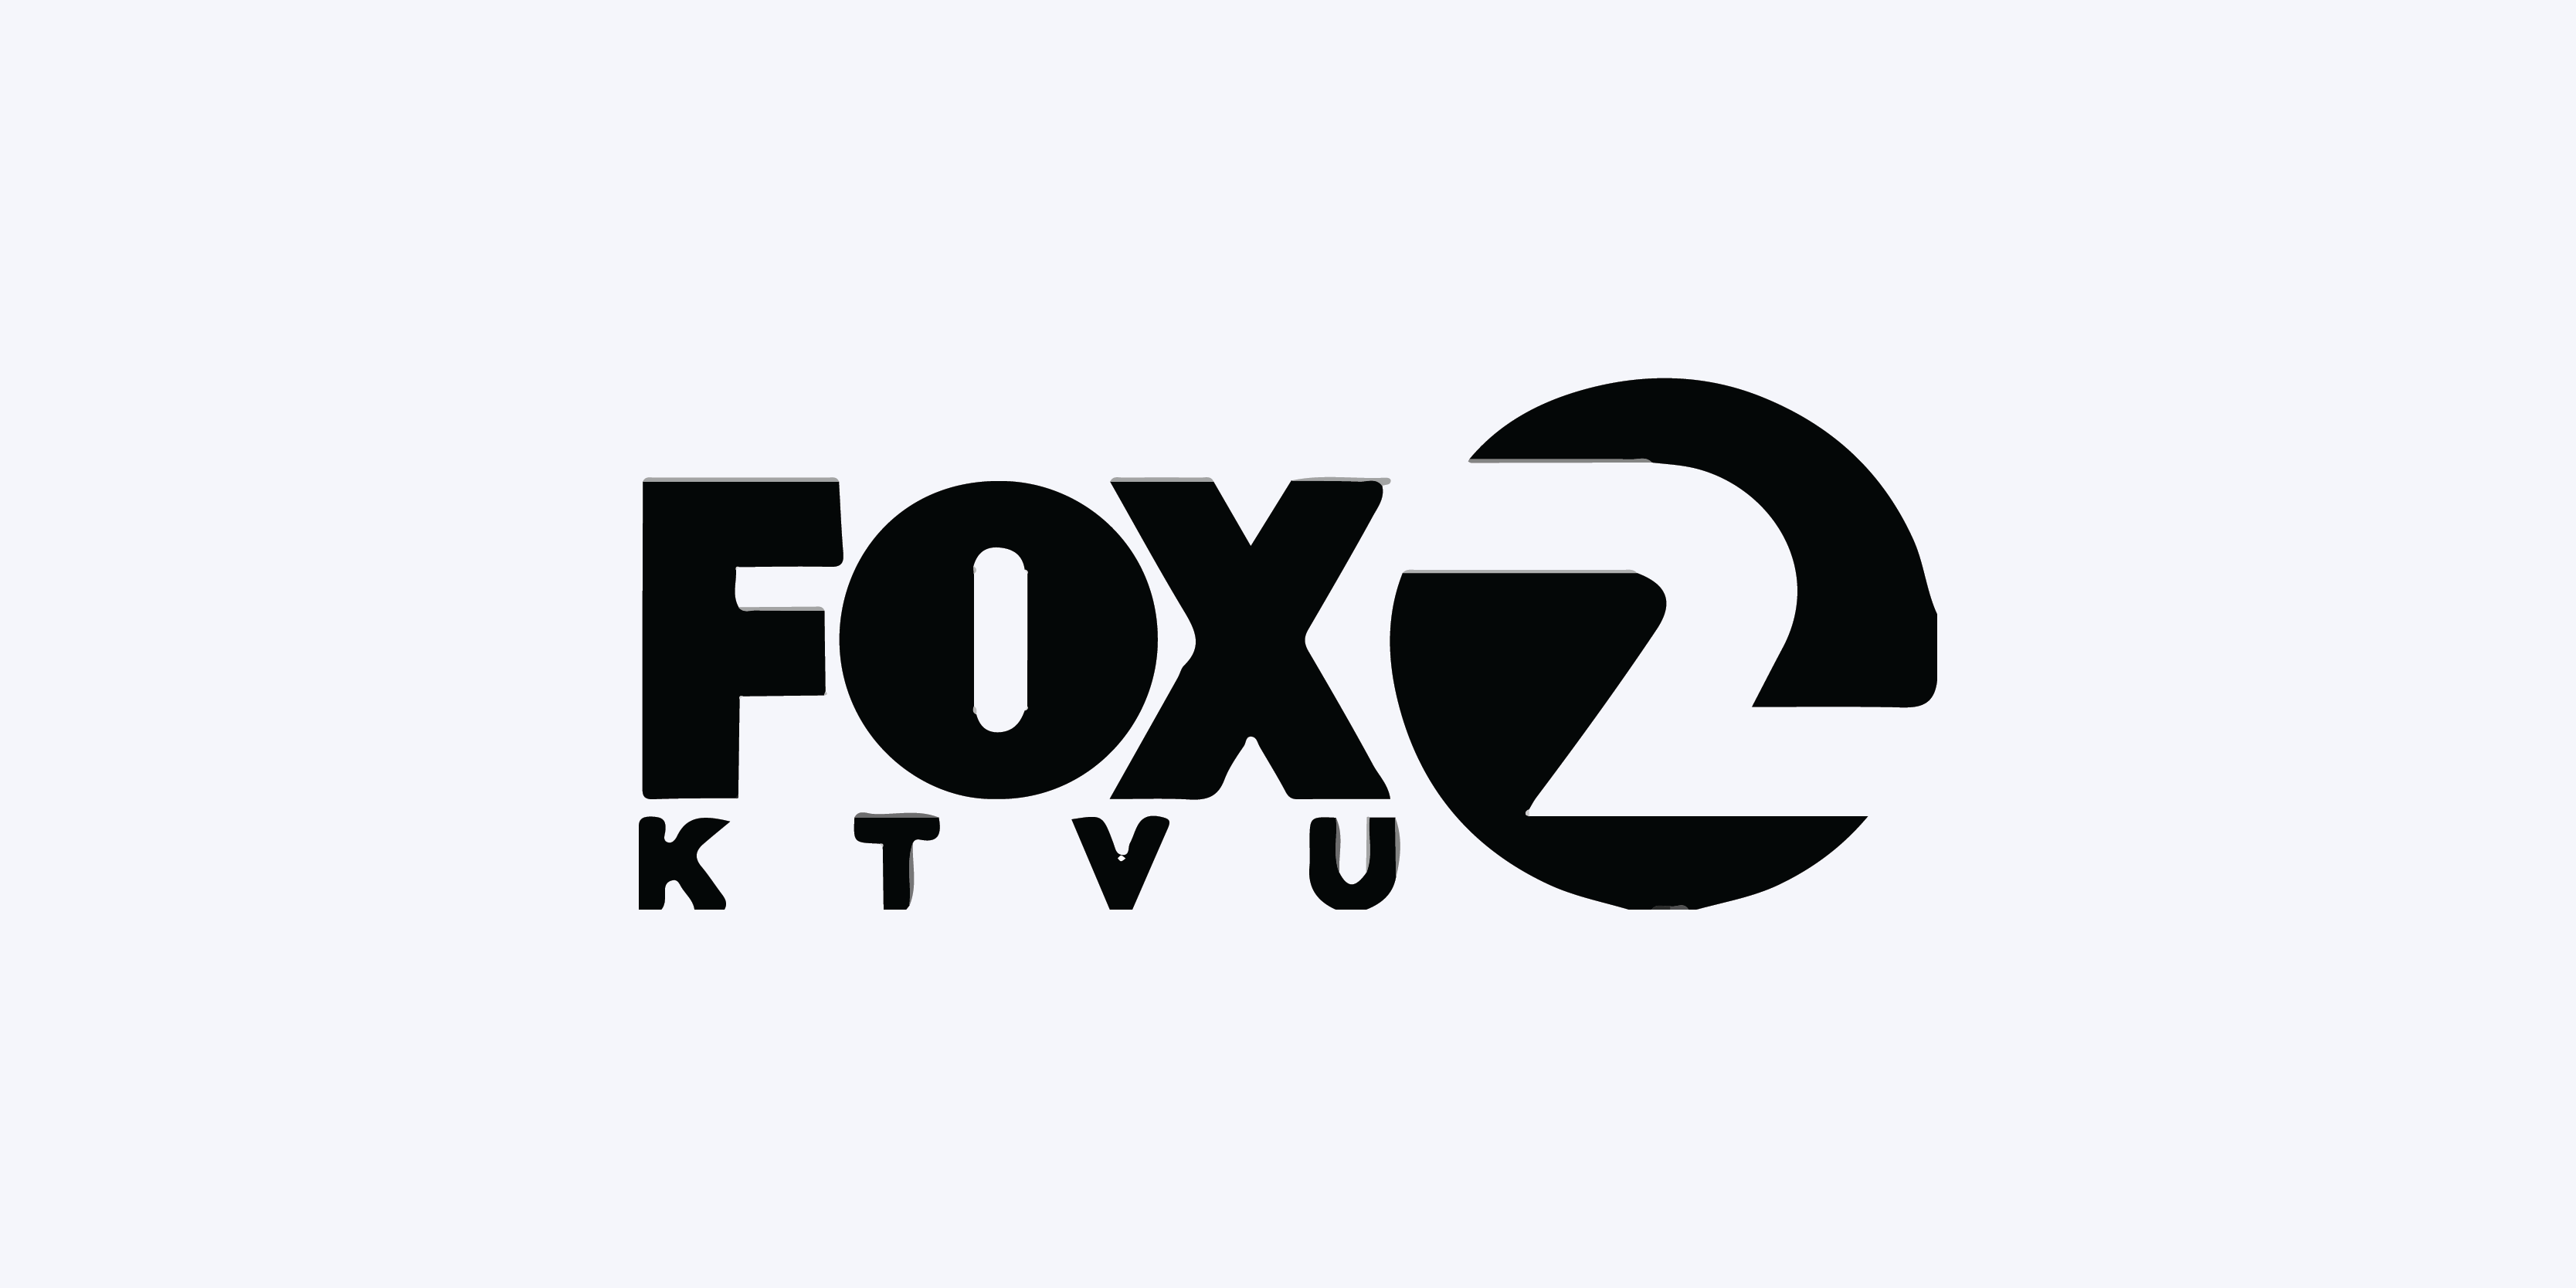 FOX KTVU